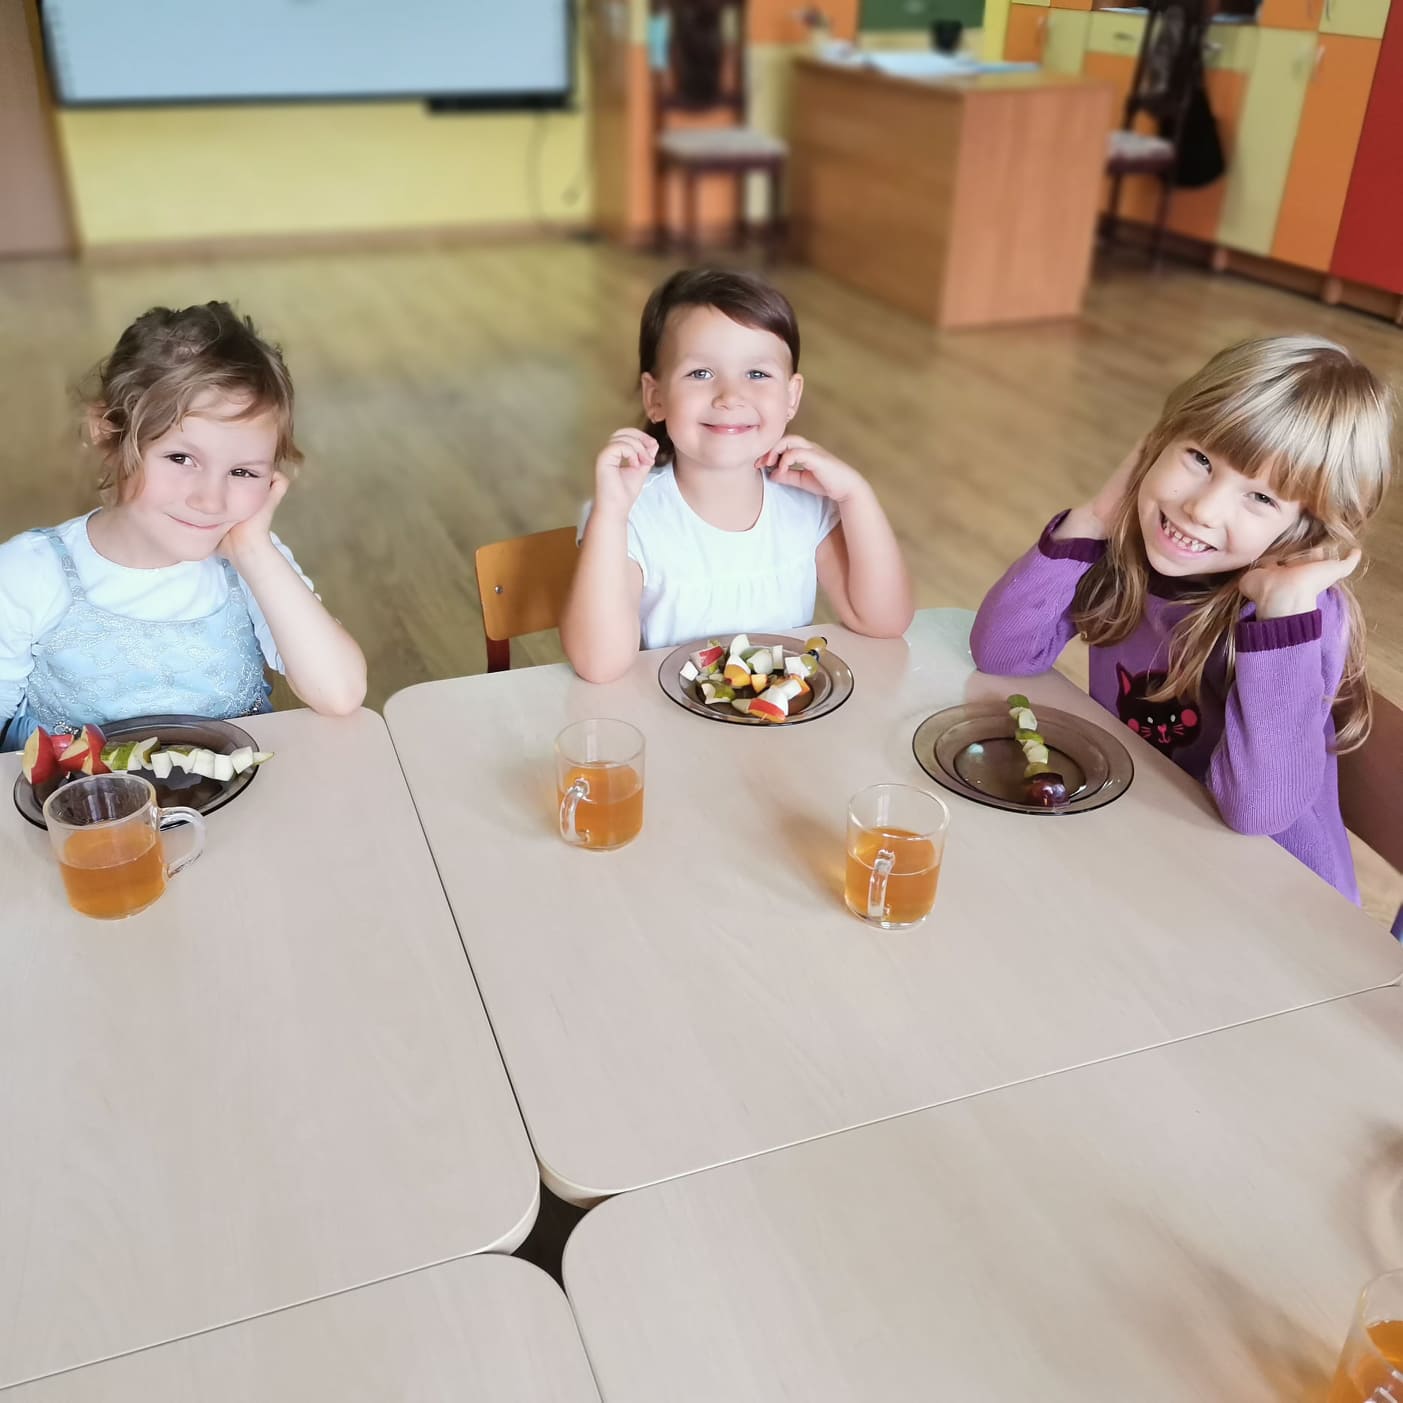 Zdjęcie przedstawia uśmiechnięte dziewczynki siedzące przy stoliku przed którymi leżą szaszłyki z jesiennych owoców ( jabłka, gruszki, śliwki).